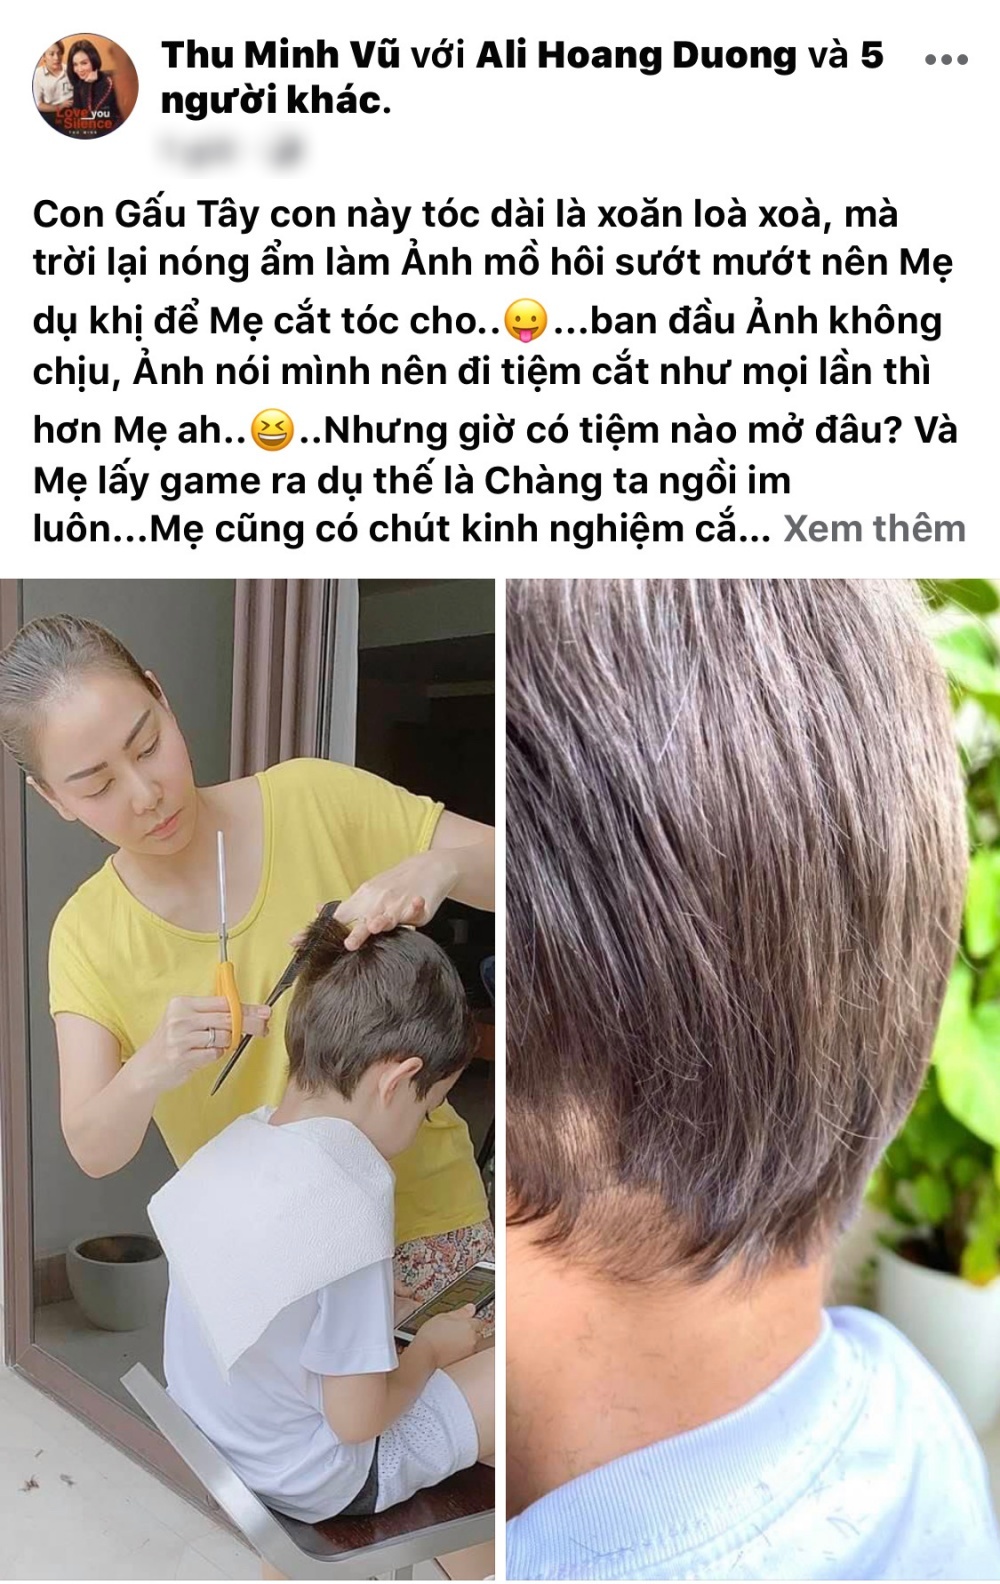  
Chia sẻ "dở khóc dở cười" của Thu Minh sau khi cắt lác tóc cậu con trai (Ảnh: chụp màn hình).